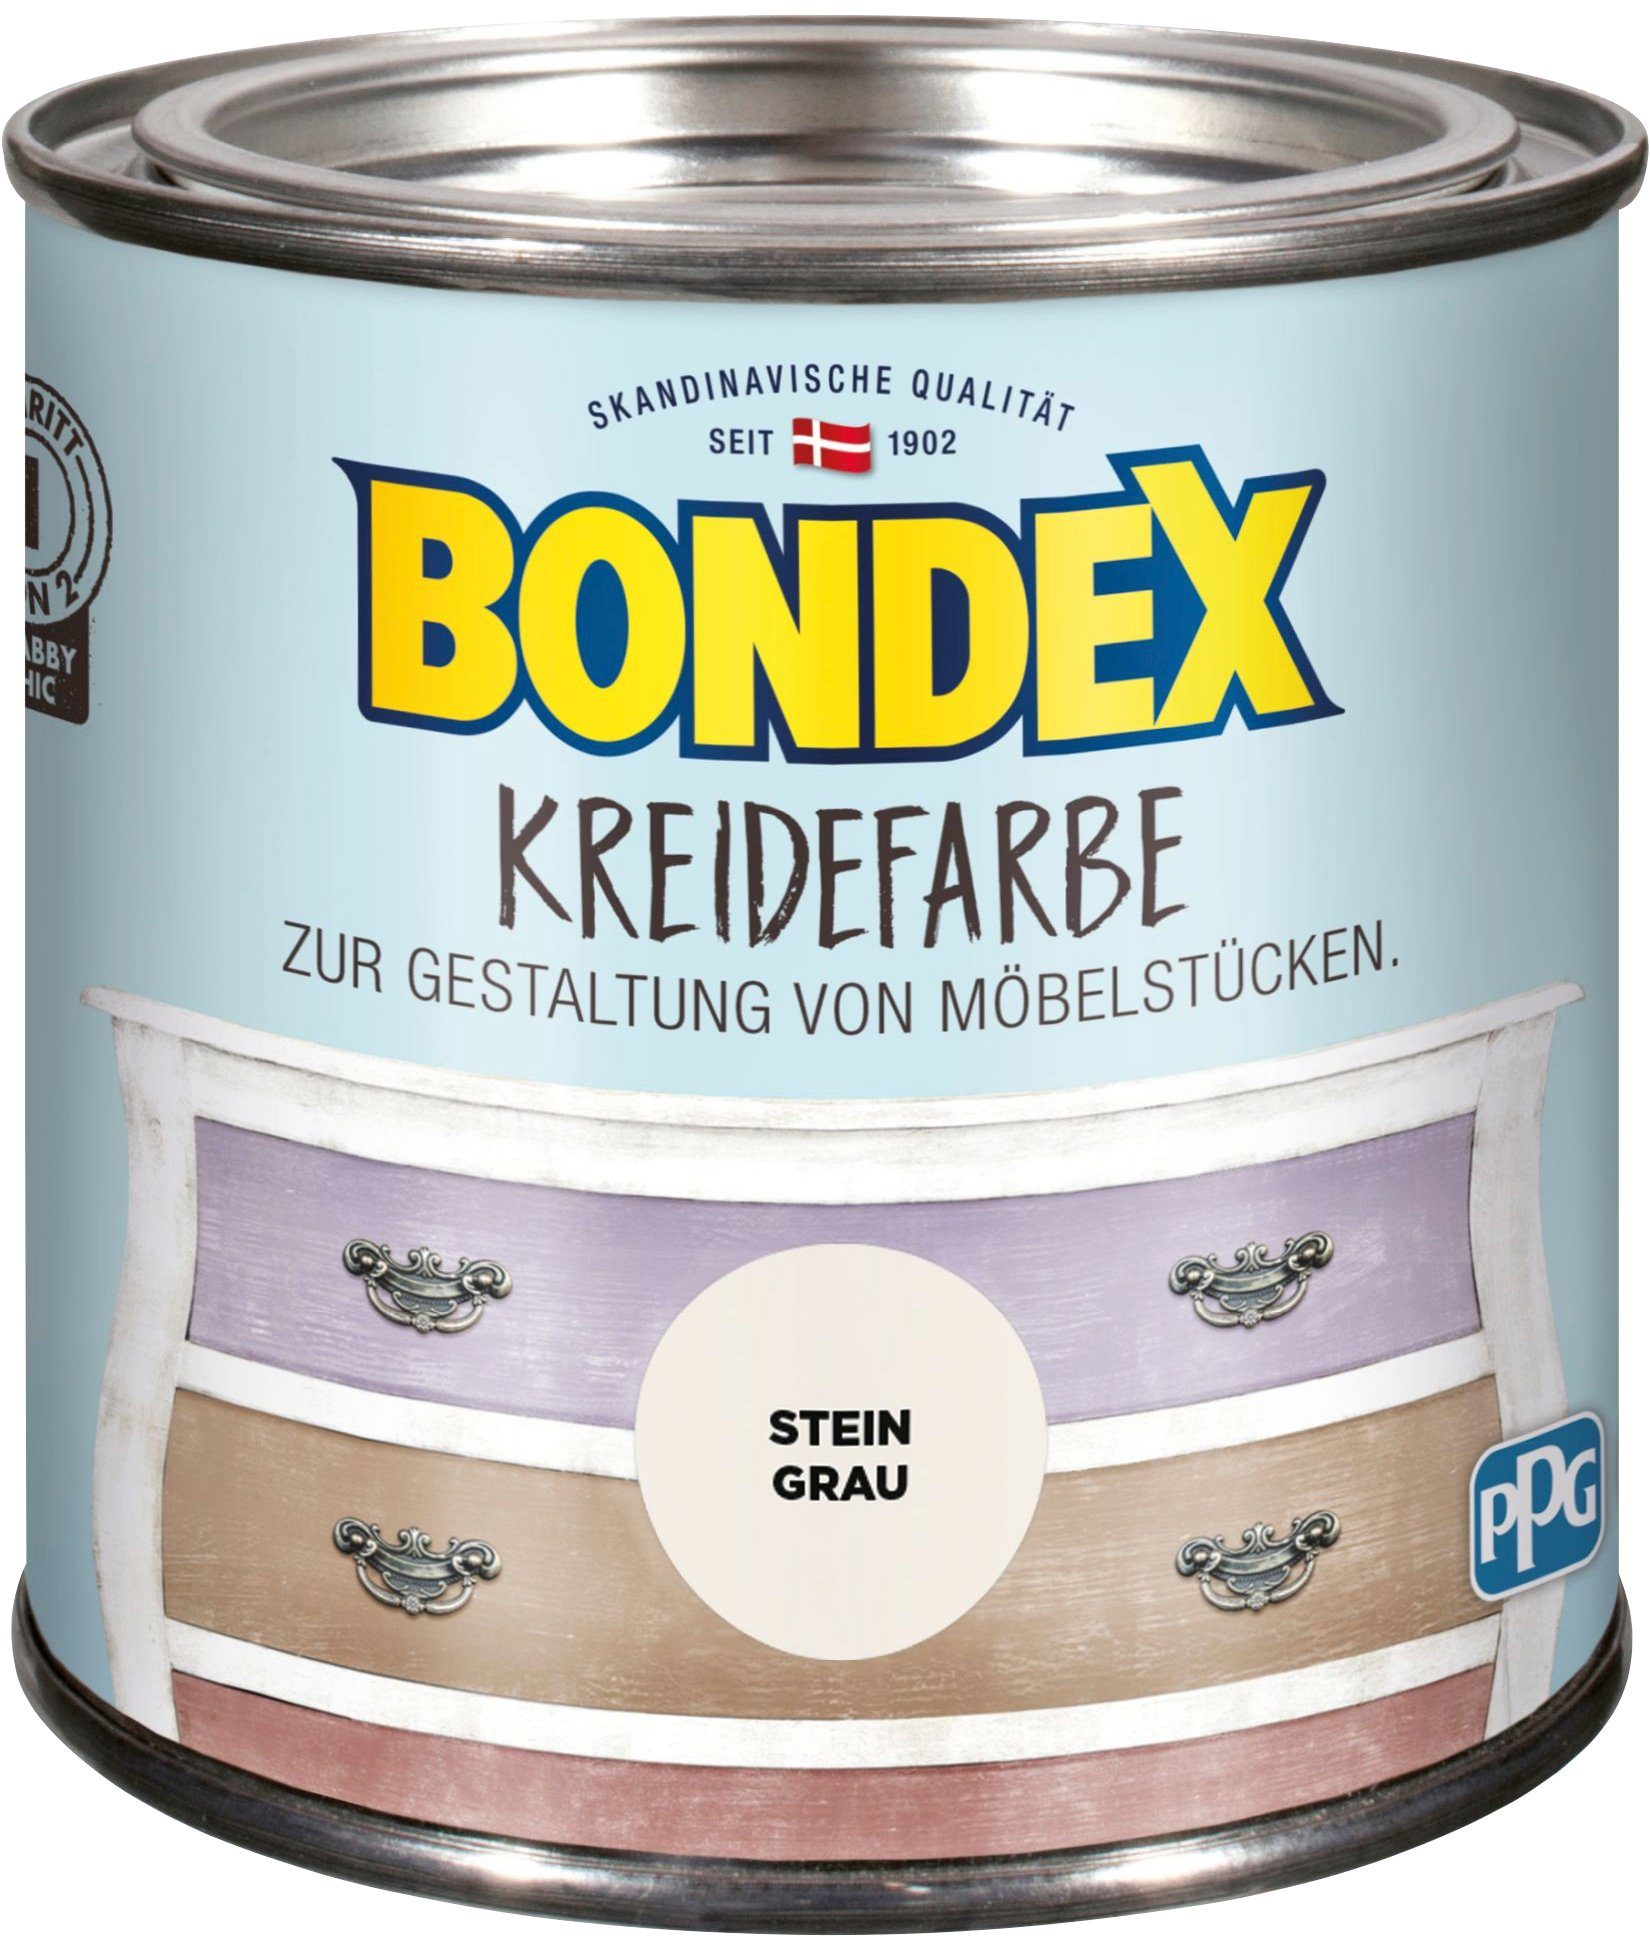 Bondex Kreidefarbe KREIDEFARBE, zur l Stein von Grau 0,5 Möbelstücken, Gestaltung